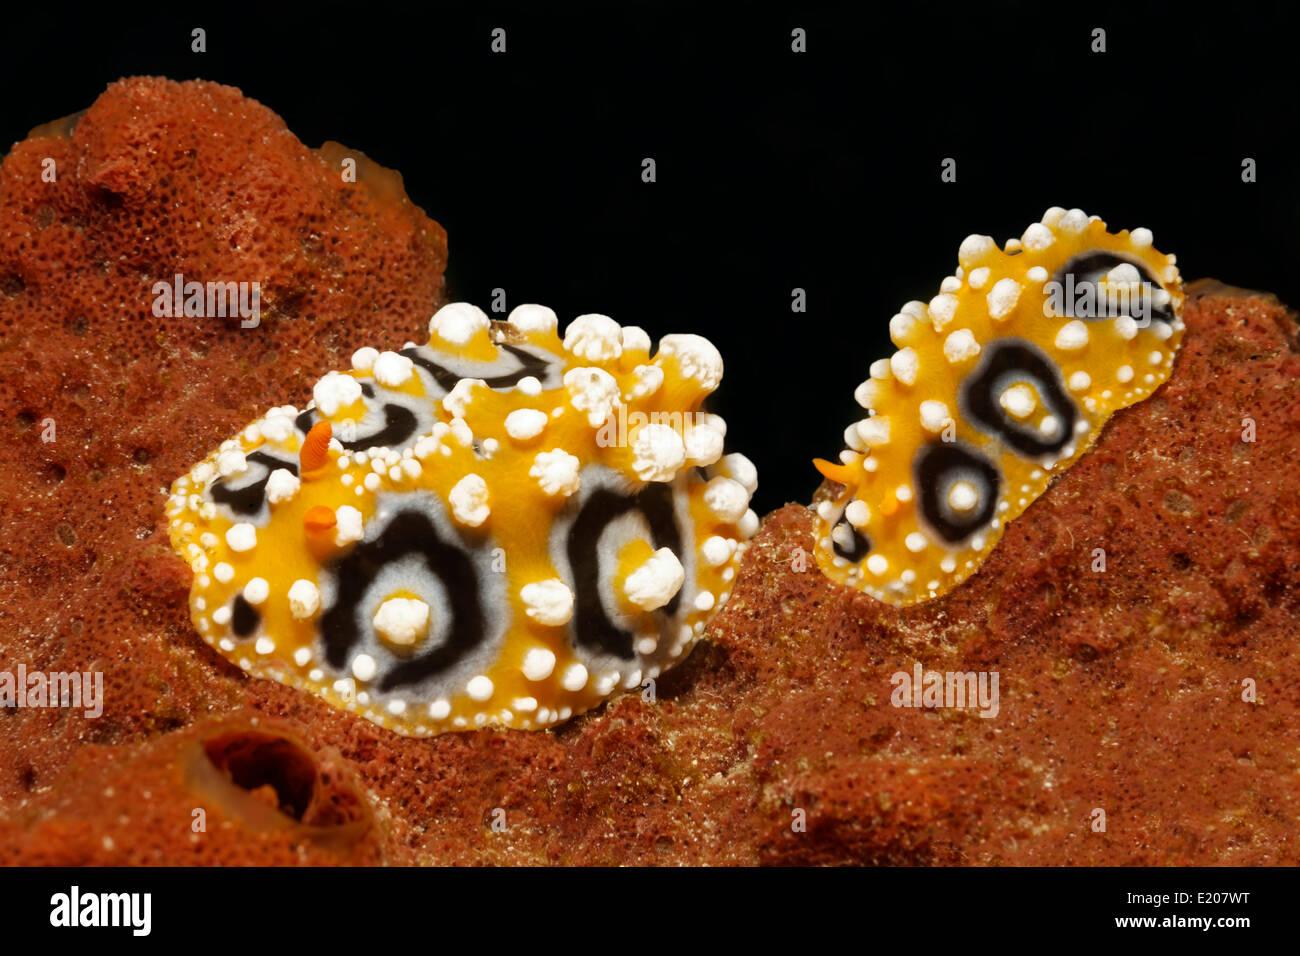 two-ocellate-phyllidias-phyllidia-ocellata-sea-slugs-on-sponge-sabang-E207WT.jpg